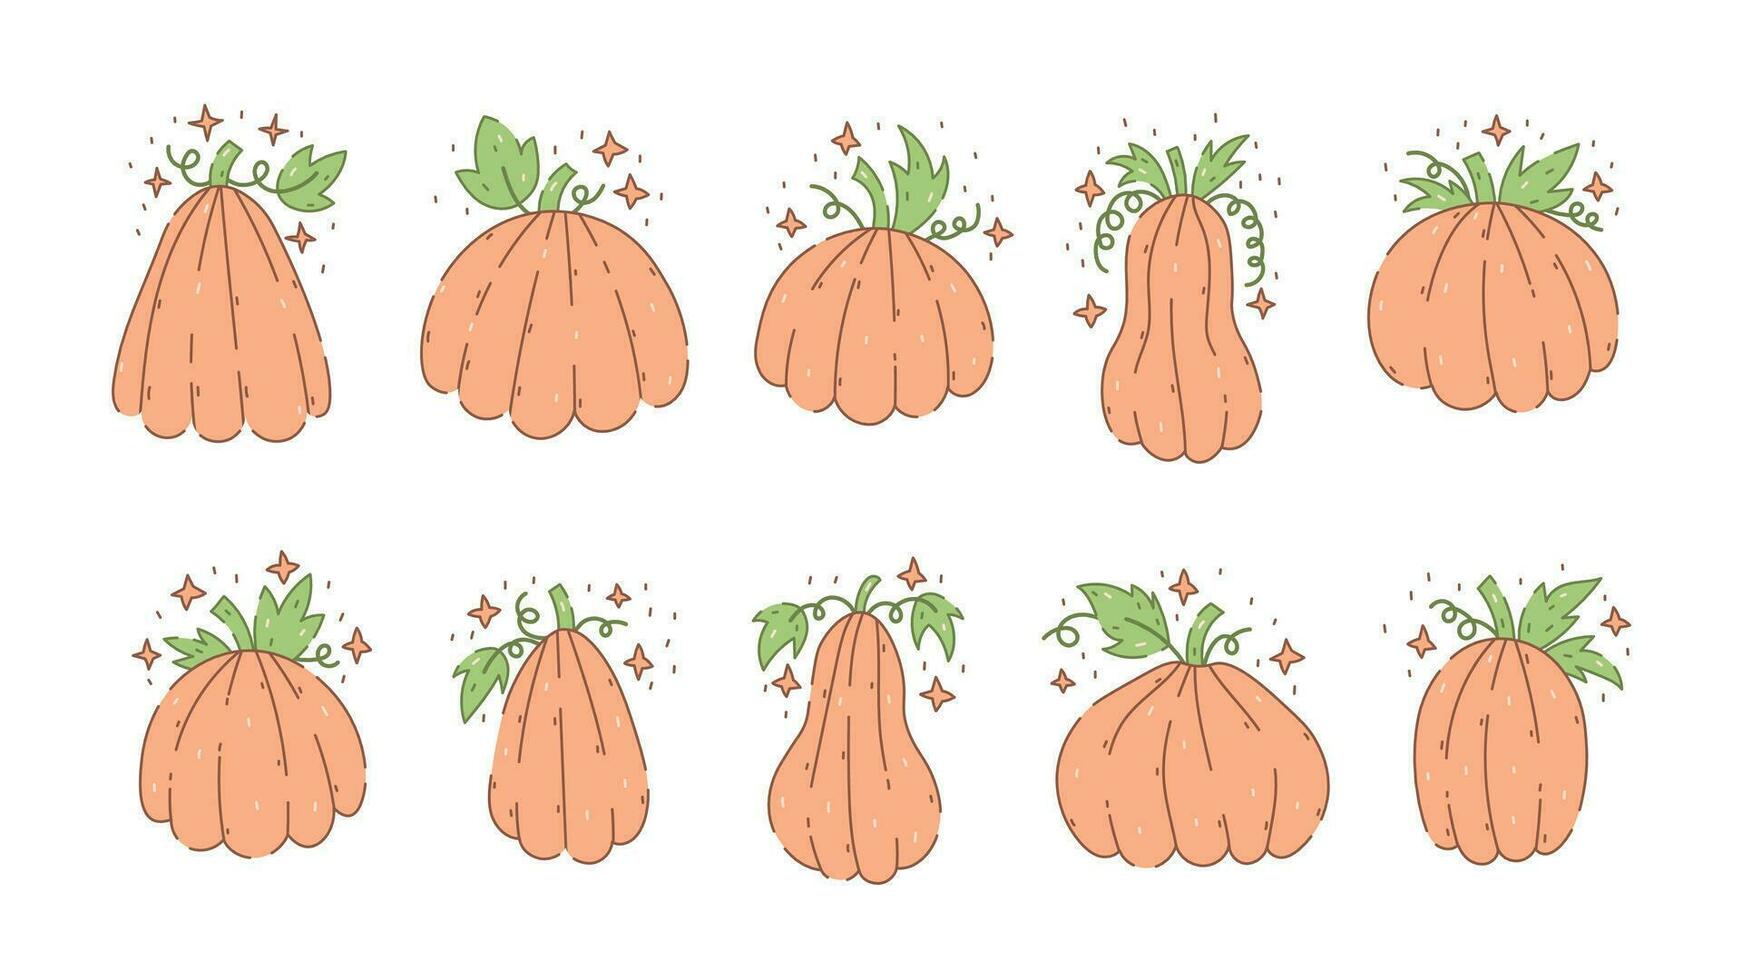 Pumpkins doodle set vector